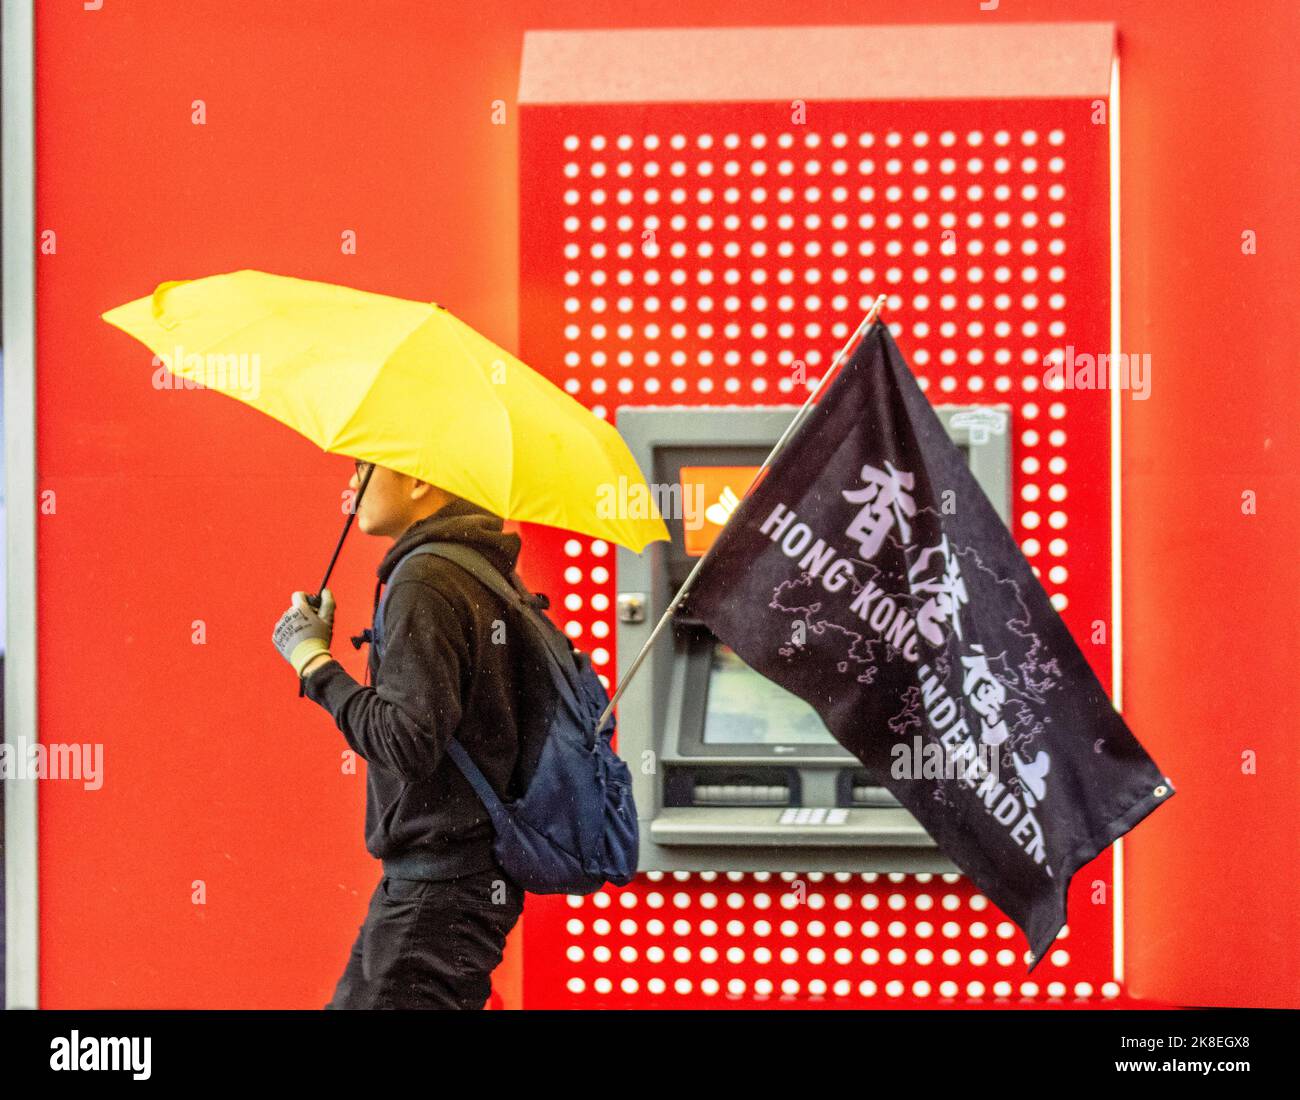 Homme avec parapluie jaune et drapeau non officiel utilisé par les activistes de l'indépendance de Hong Kong à Preston. Météo Royaume-Uni. Octobre 2022; humide et venteux début à la journée dans le nord-ouest de l'Angleterre. Fortes poussées de pluie avec risque de tonnerre. Il deviendra plus sec plus tard dans la journée, mais il restera nuageux avec quelques averses persistantes. Banque D'Images